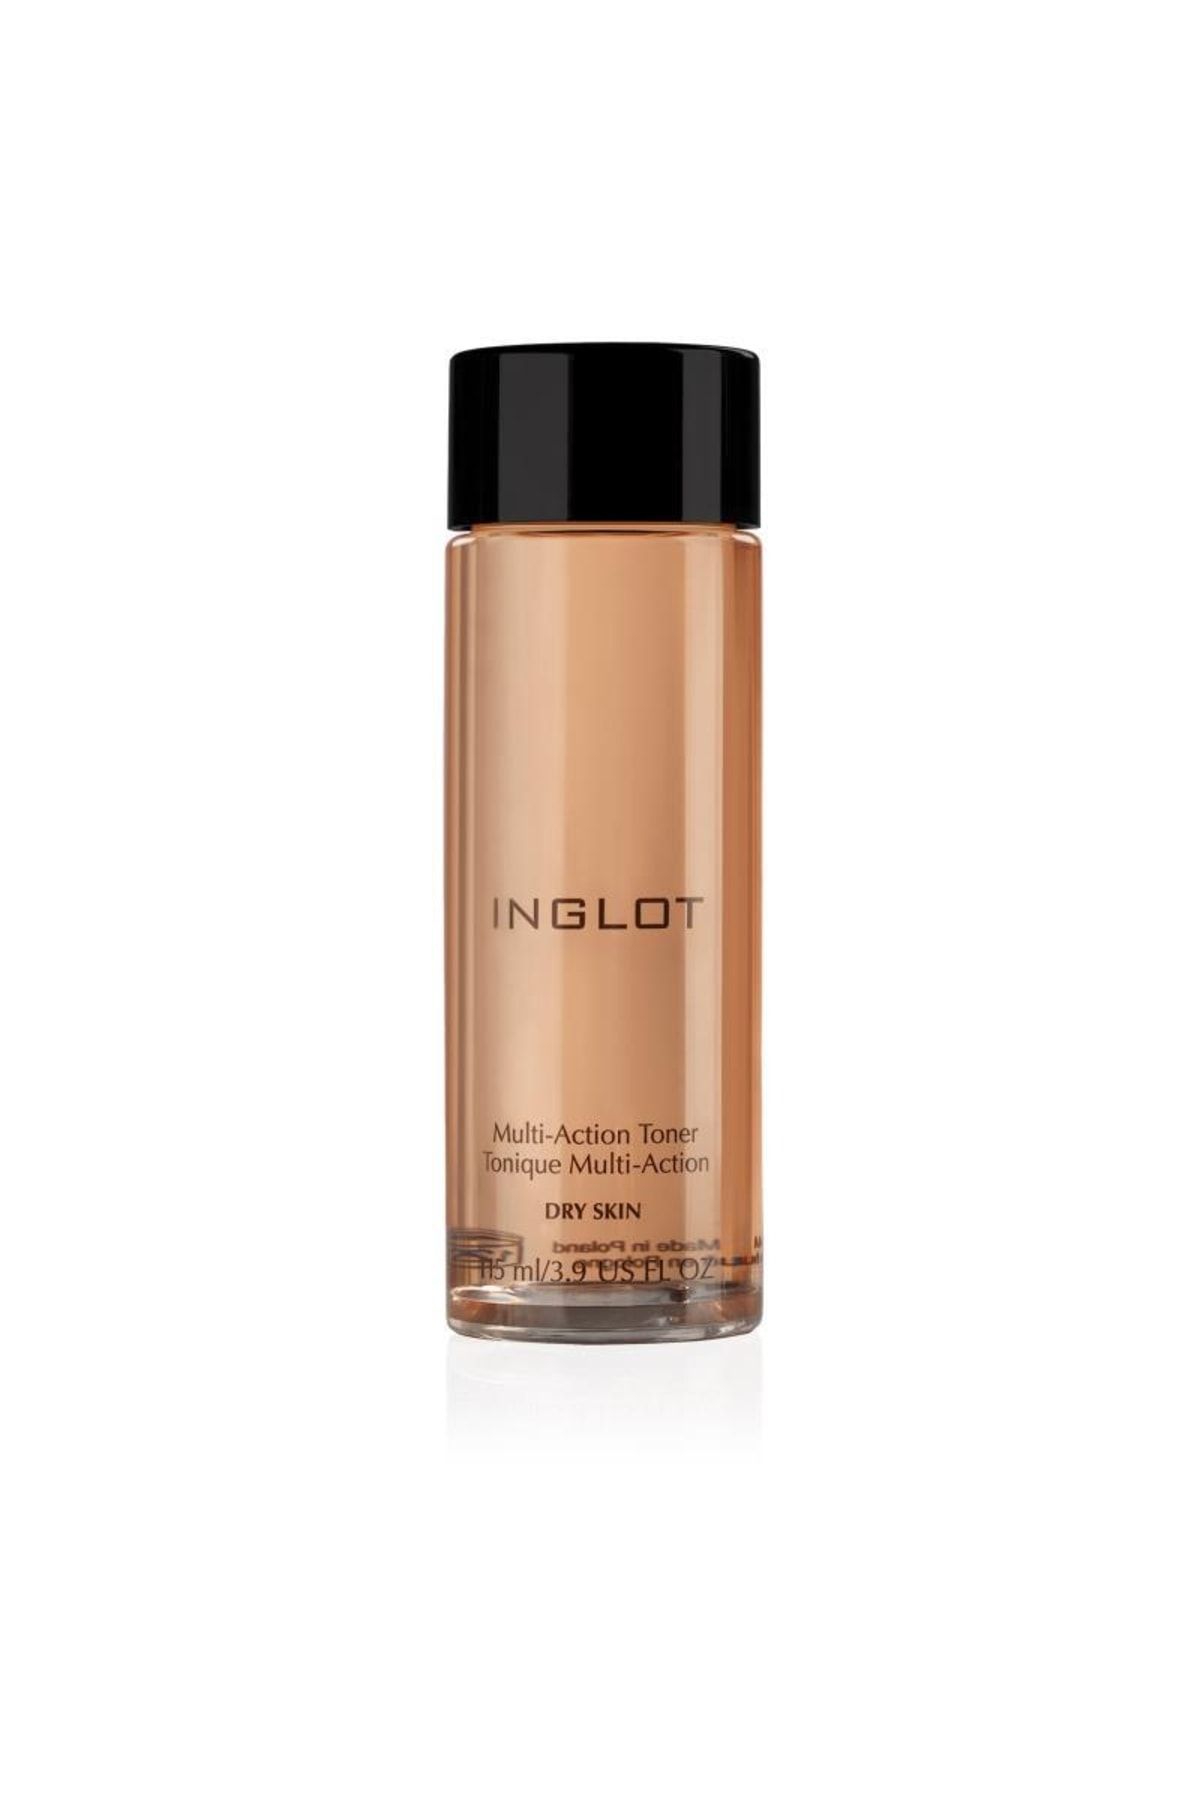 Inglot Kuru Ciltler Için Canlandırıcı Tonik-multi-action Toner (115 ML) – Dry Skin